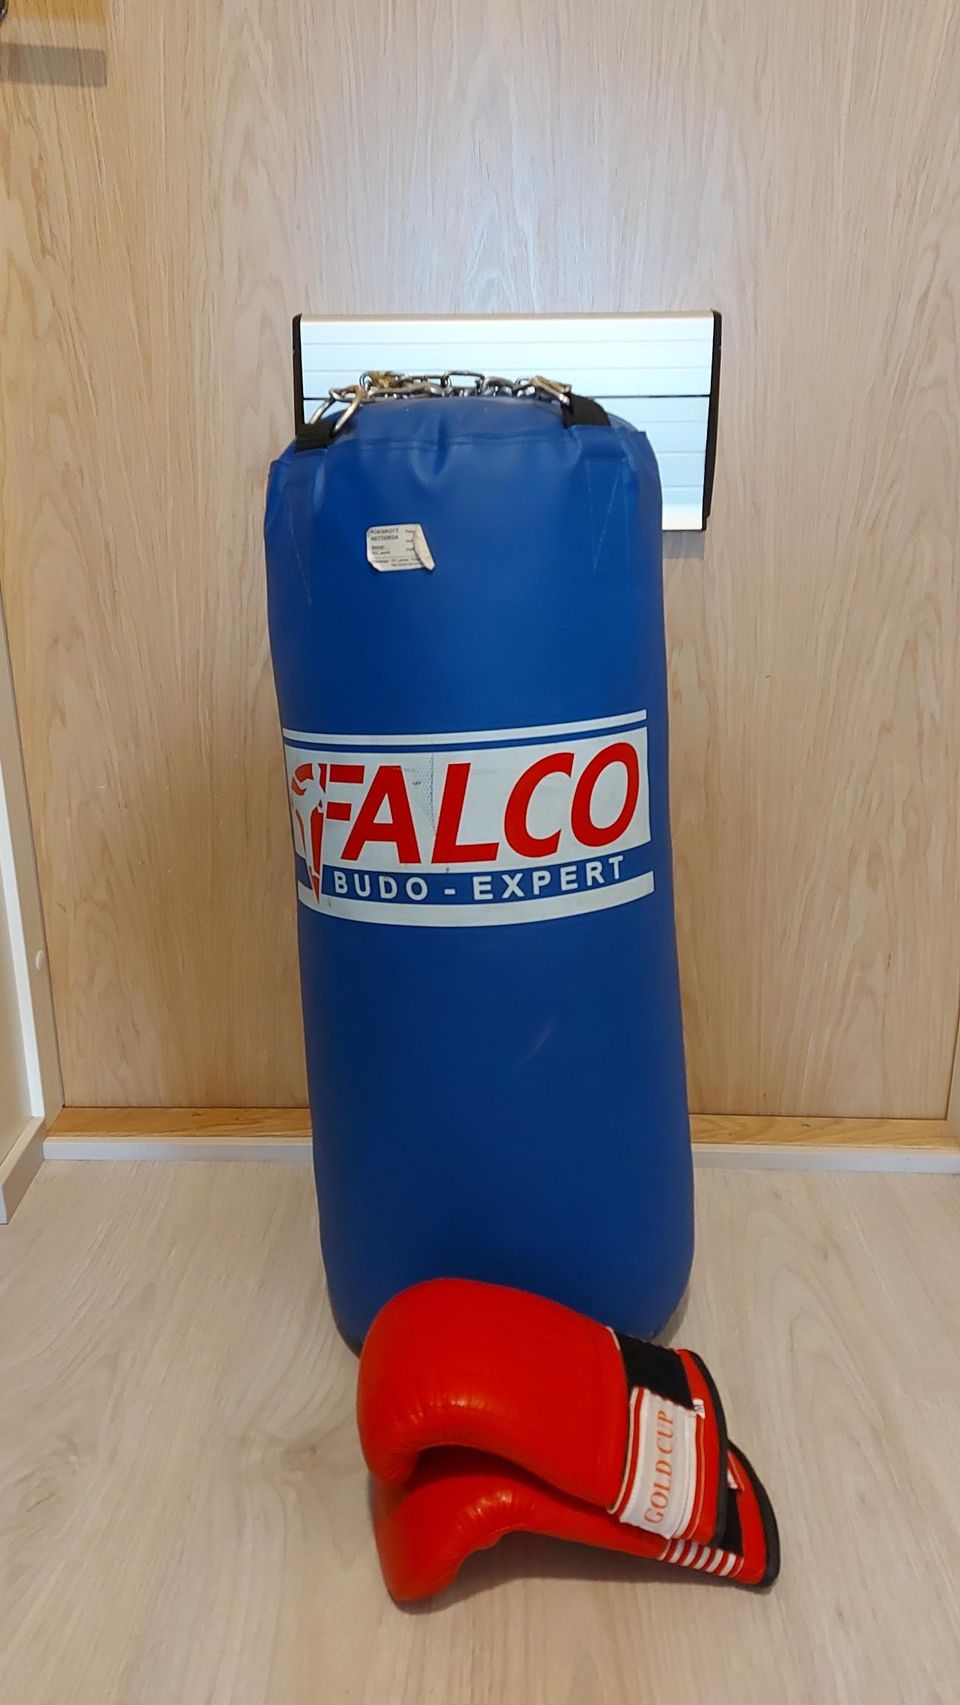 Nyrkkeilysäkki Falco 14kg ja hanskat